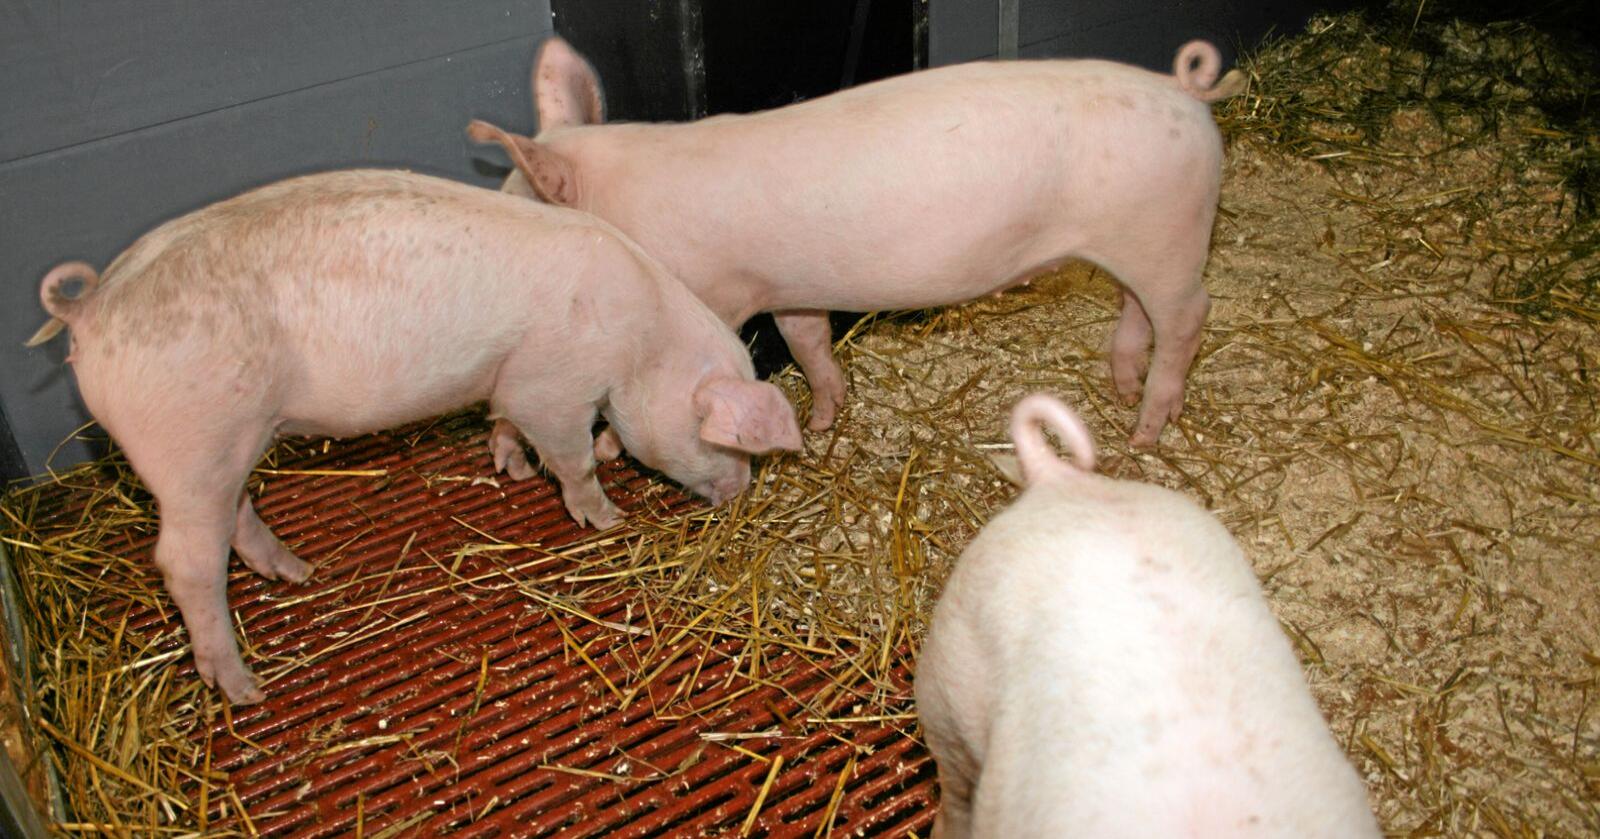 Svinemanko: Produksjonen av svinekjøtt her i landet er mindre enn etterspørselen. Det fører til tollkutt for å sikre nok ribbe til jul. Foto: Bjarne Bekkeheien Aase